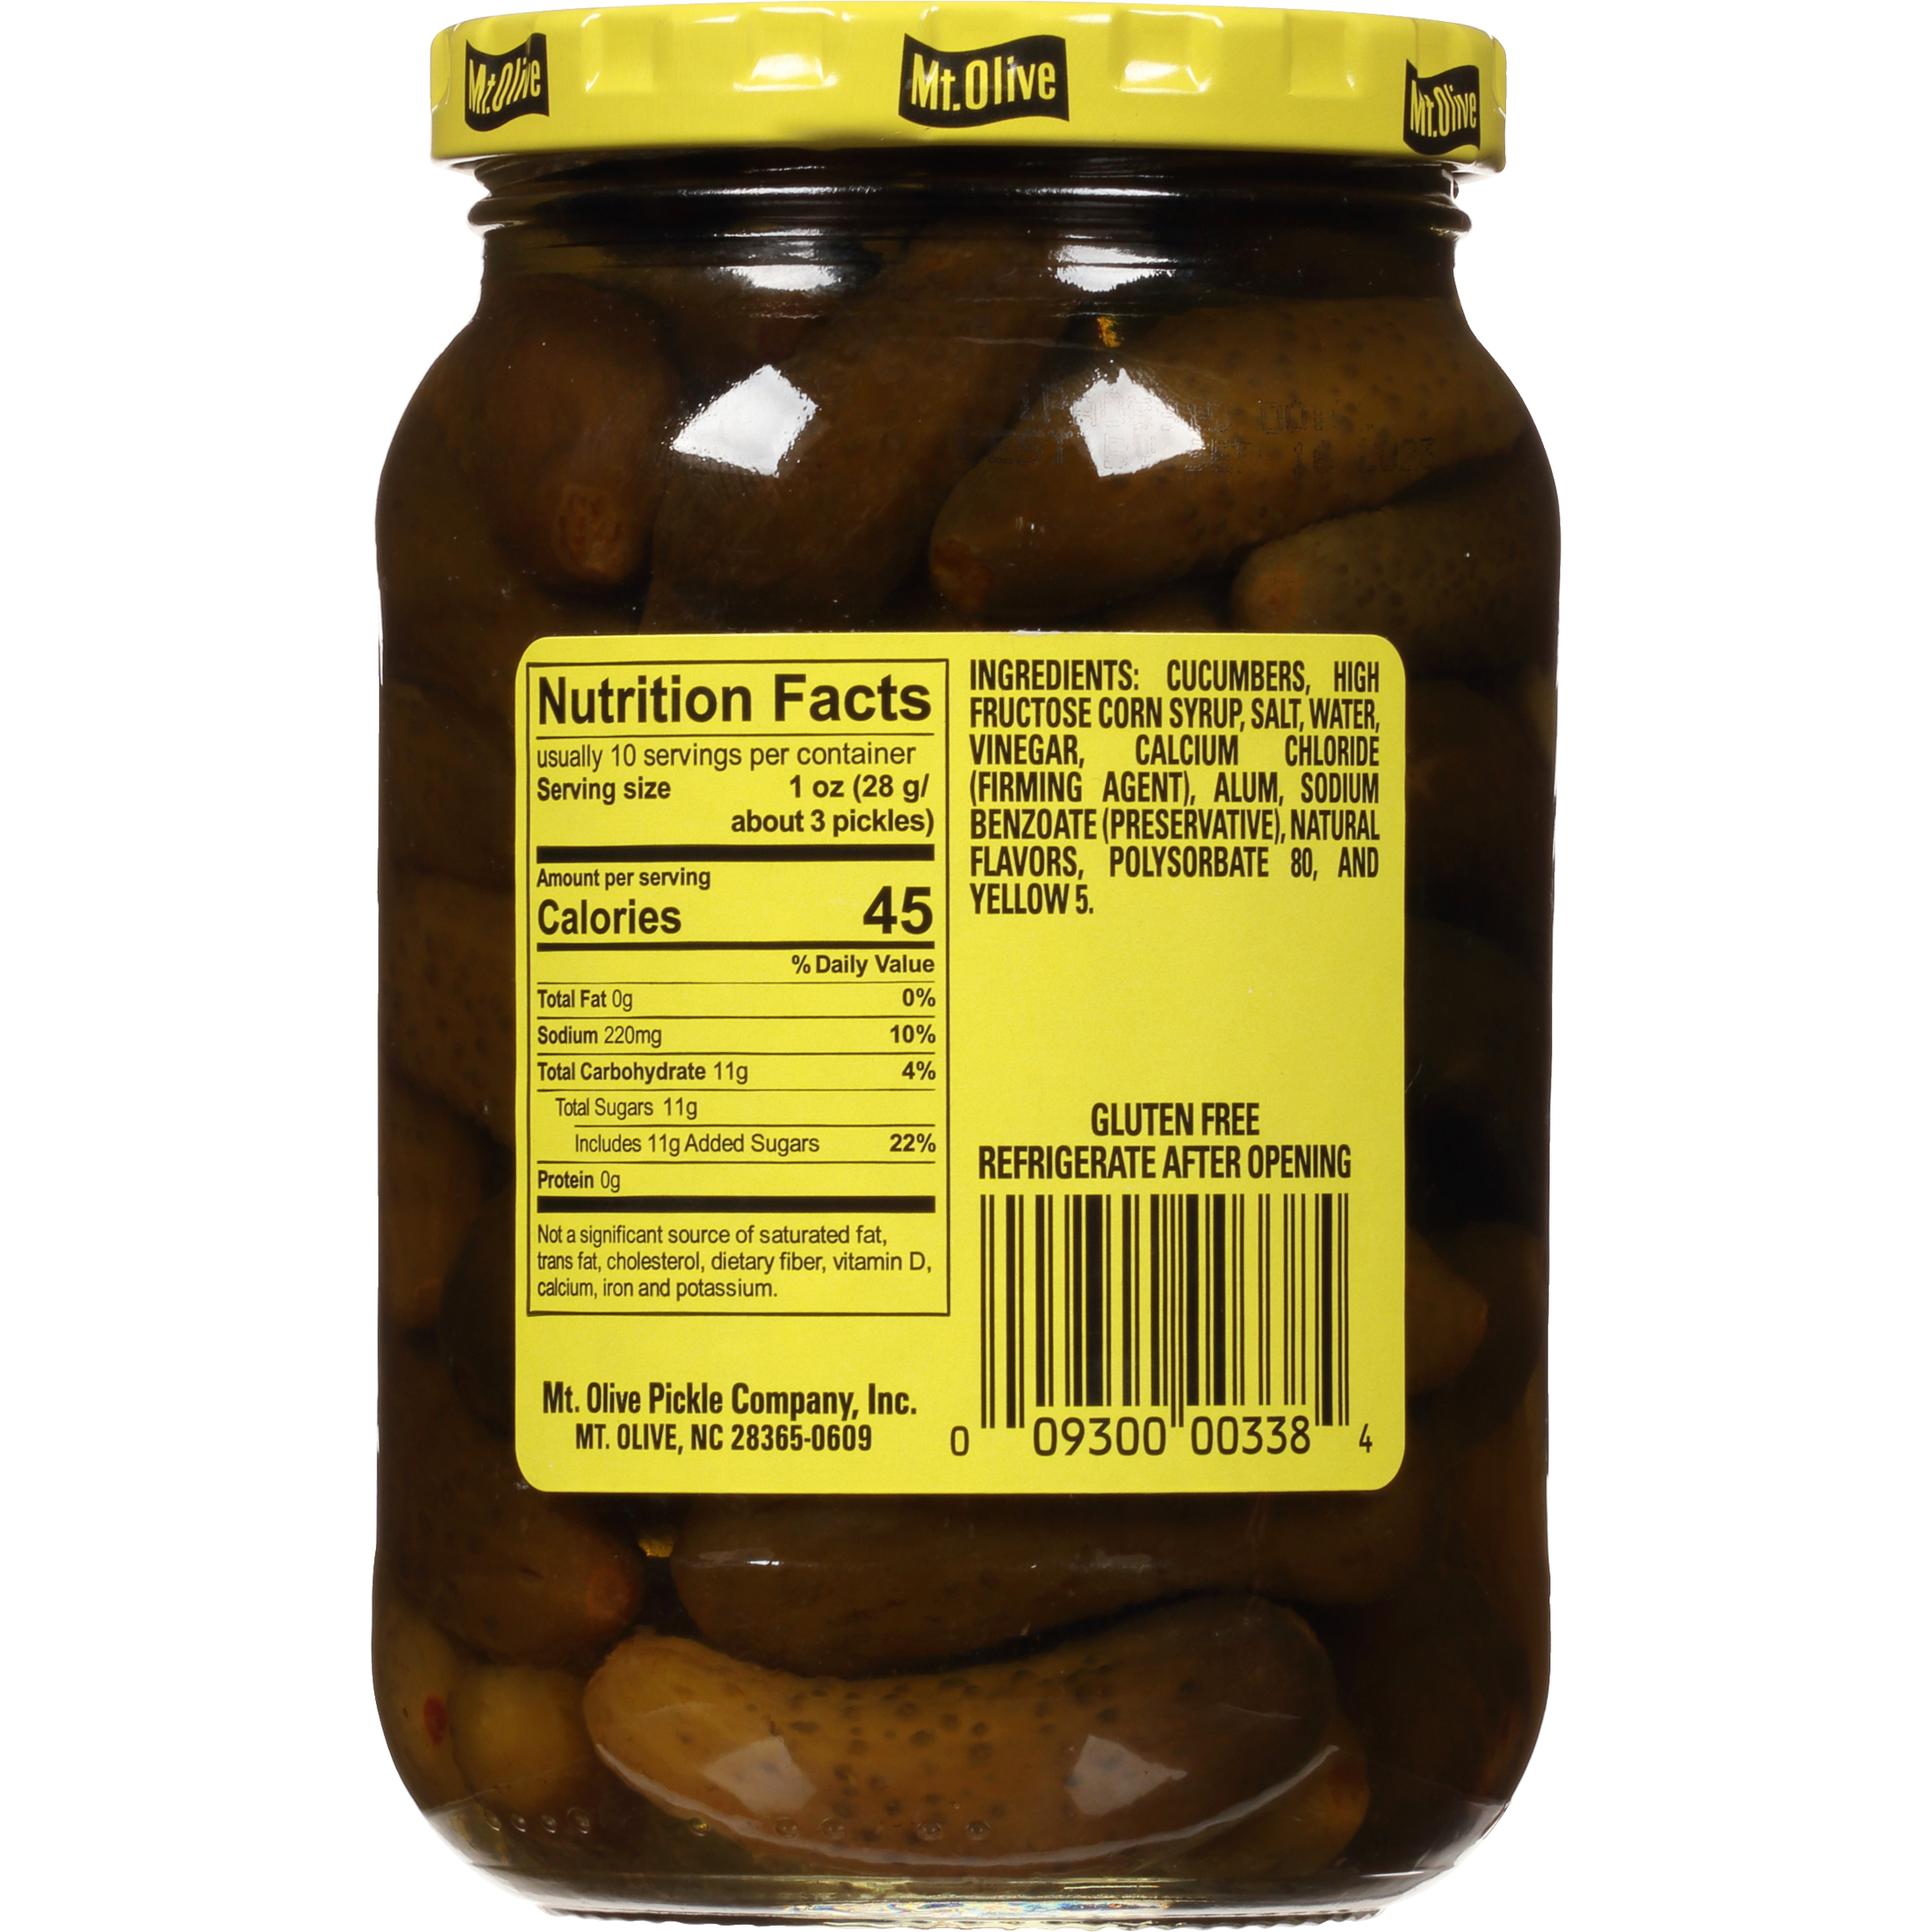 Mt. Olive Sweet Petite Snack Cruncher Pickles, 16 fl oz Jar - image 2 of 5